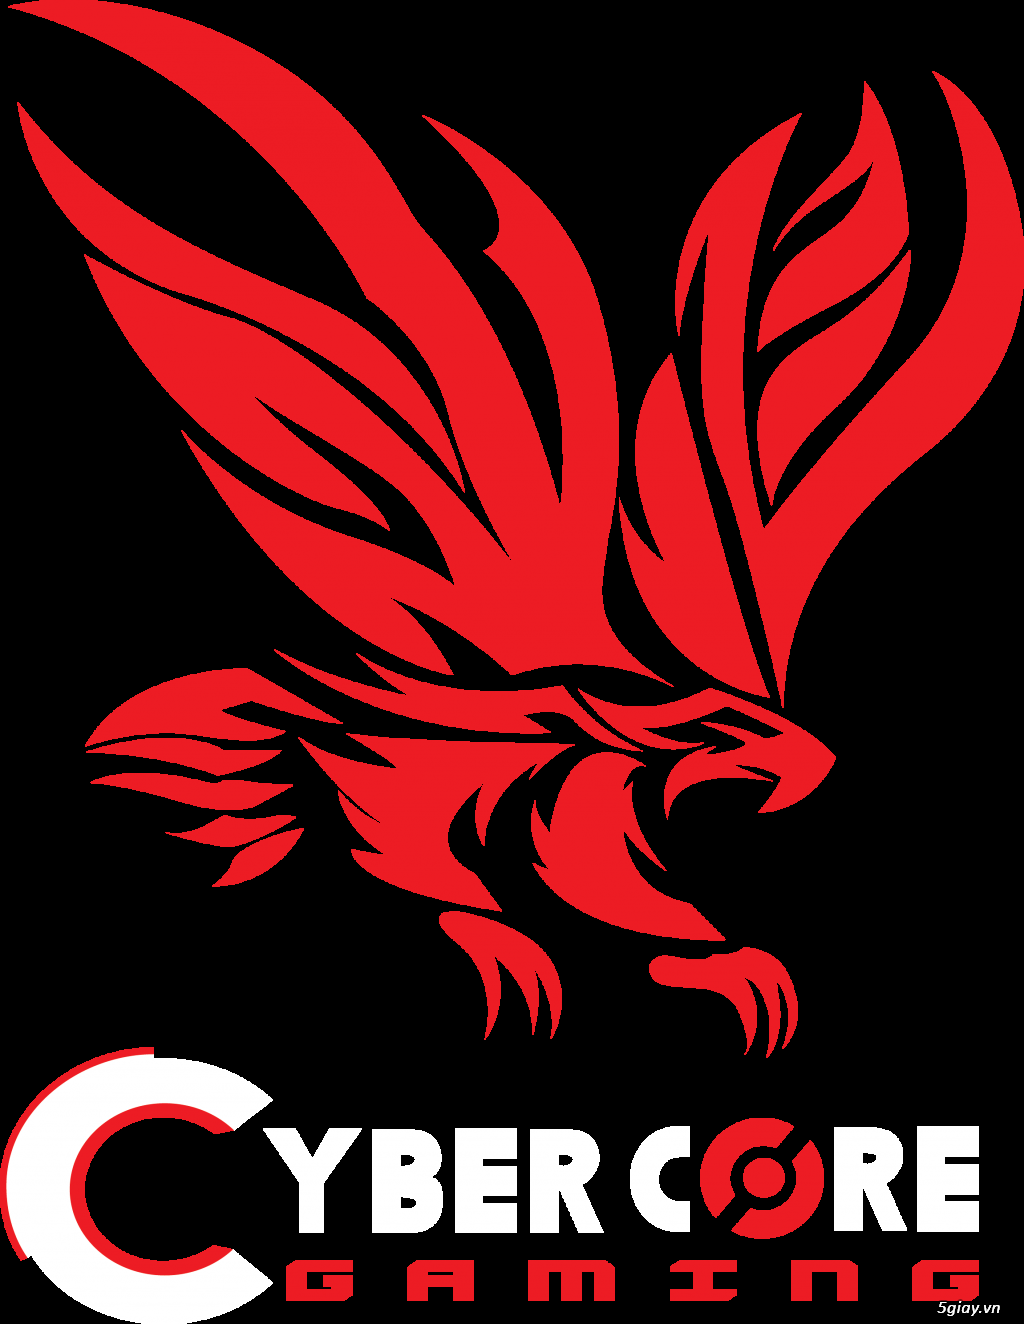 Nam Nữ Phục Vụ Trông coi Hệ thống Cyber Gaming HCM - Nhận sinh viên